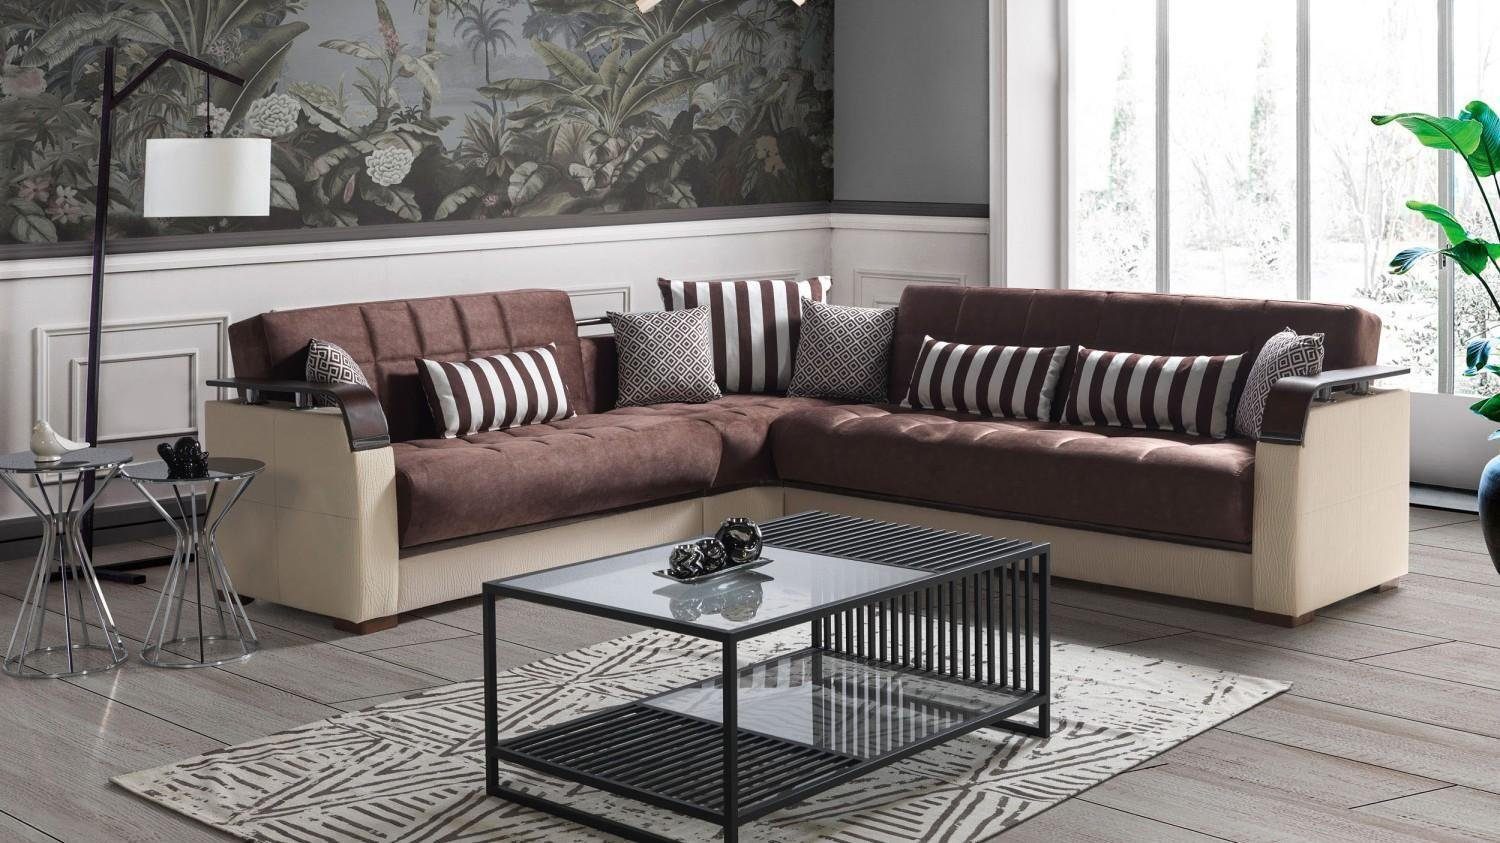 JVmoebel Ecksofa Ecksofa Wohnlandschaft Beige L-Form Sofa Wohnzimmer Ecksofas Luxus, Made In Europe